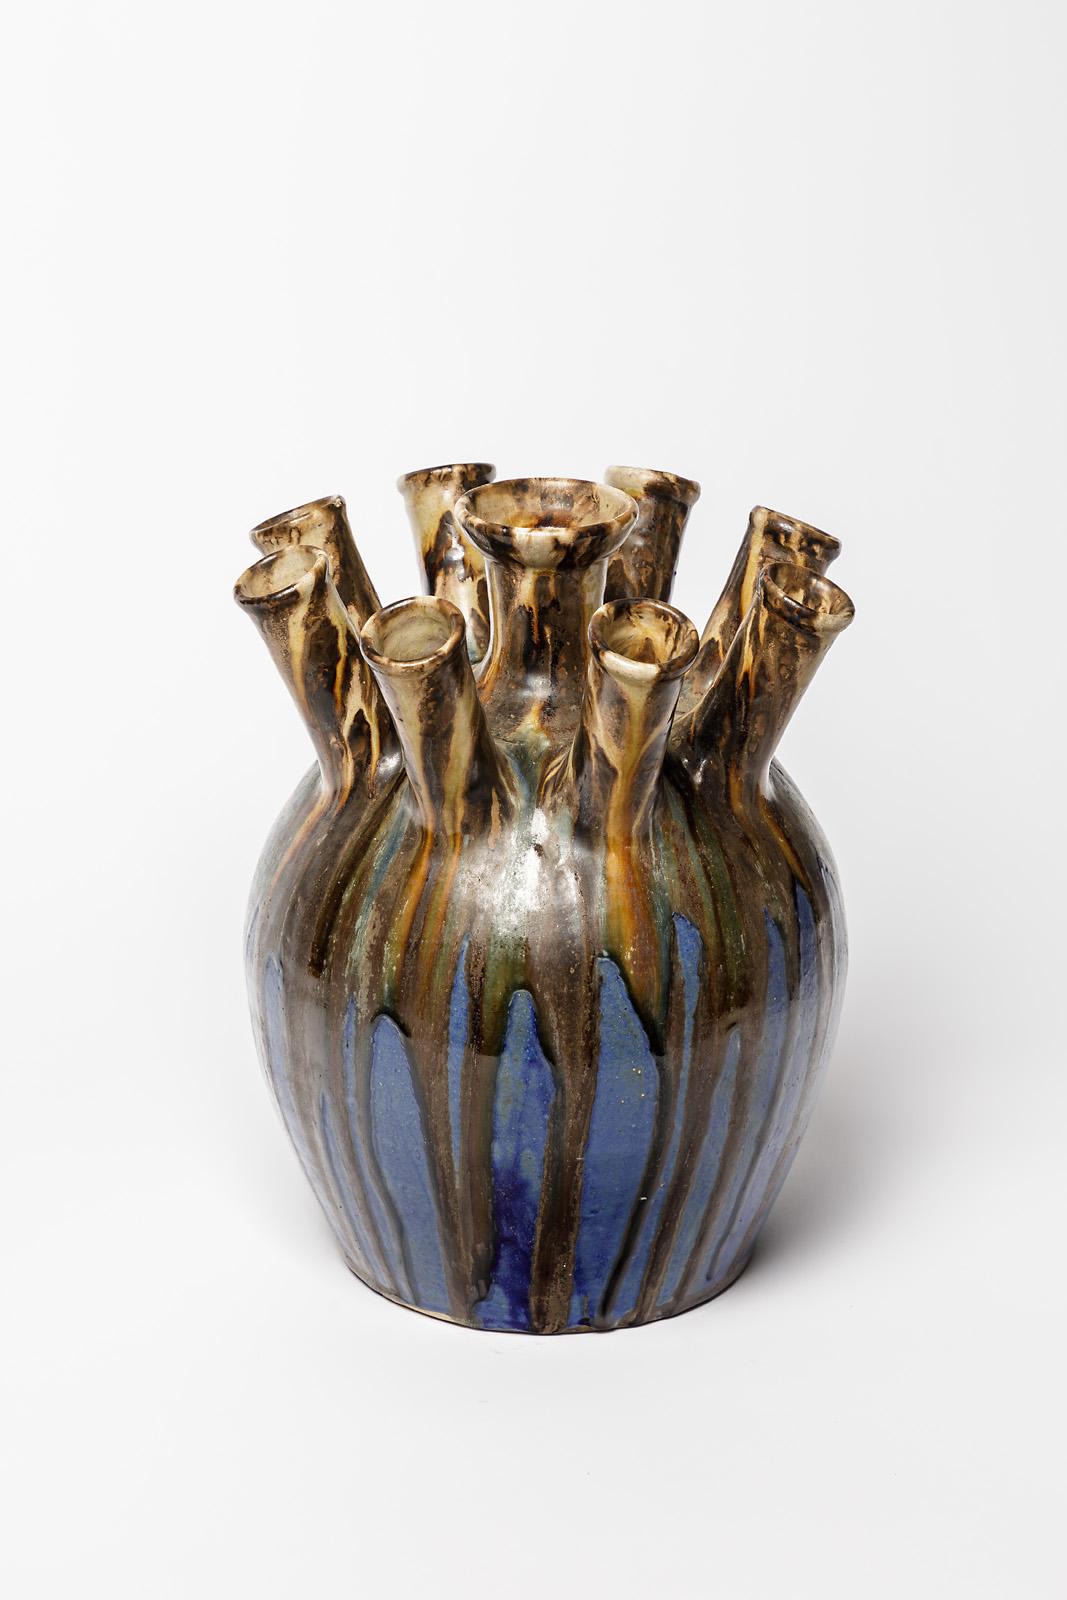 Joseph Talbot

Signiert unter dem Sockel

Original XX. Jahrhundert Design große Vase aus Steingut Keramik

Perfekter Zustand

Blaue und braune Steingutkeramik Glasuren Farben

Um 1930

Maße: Höhe 32 cm
Groß 27 cm.